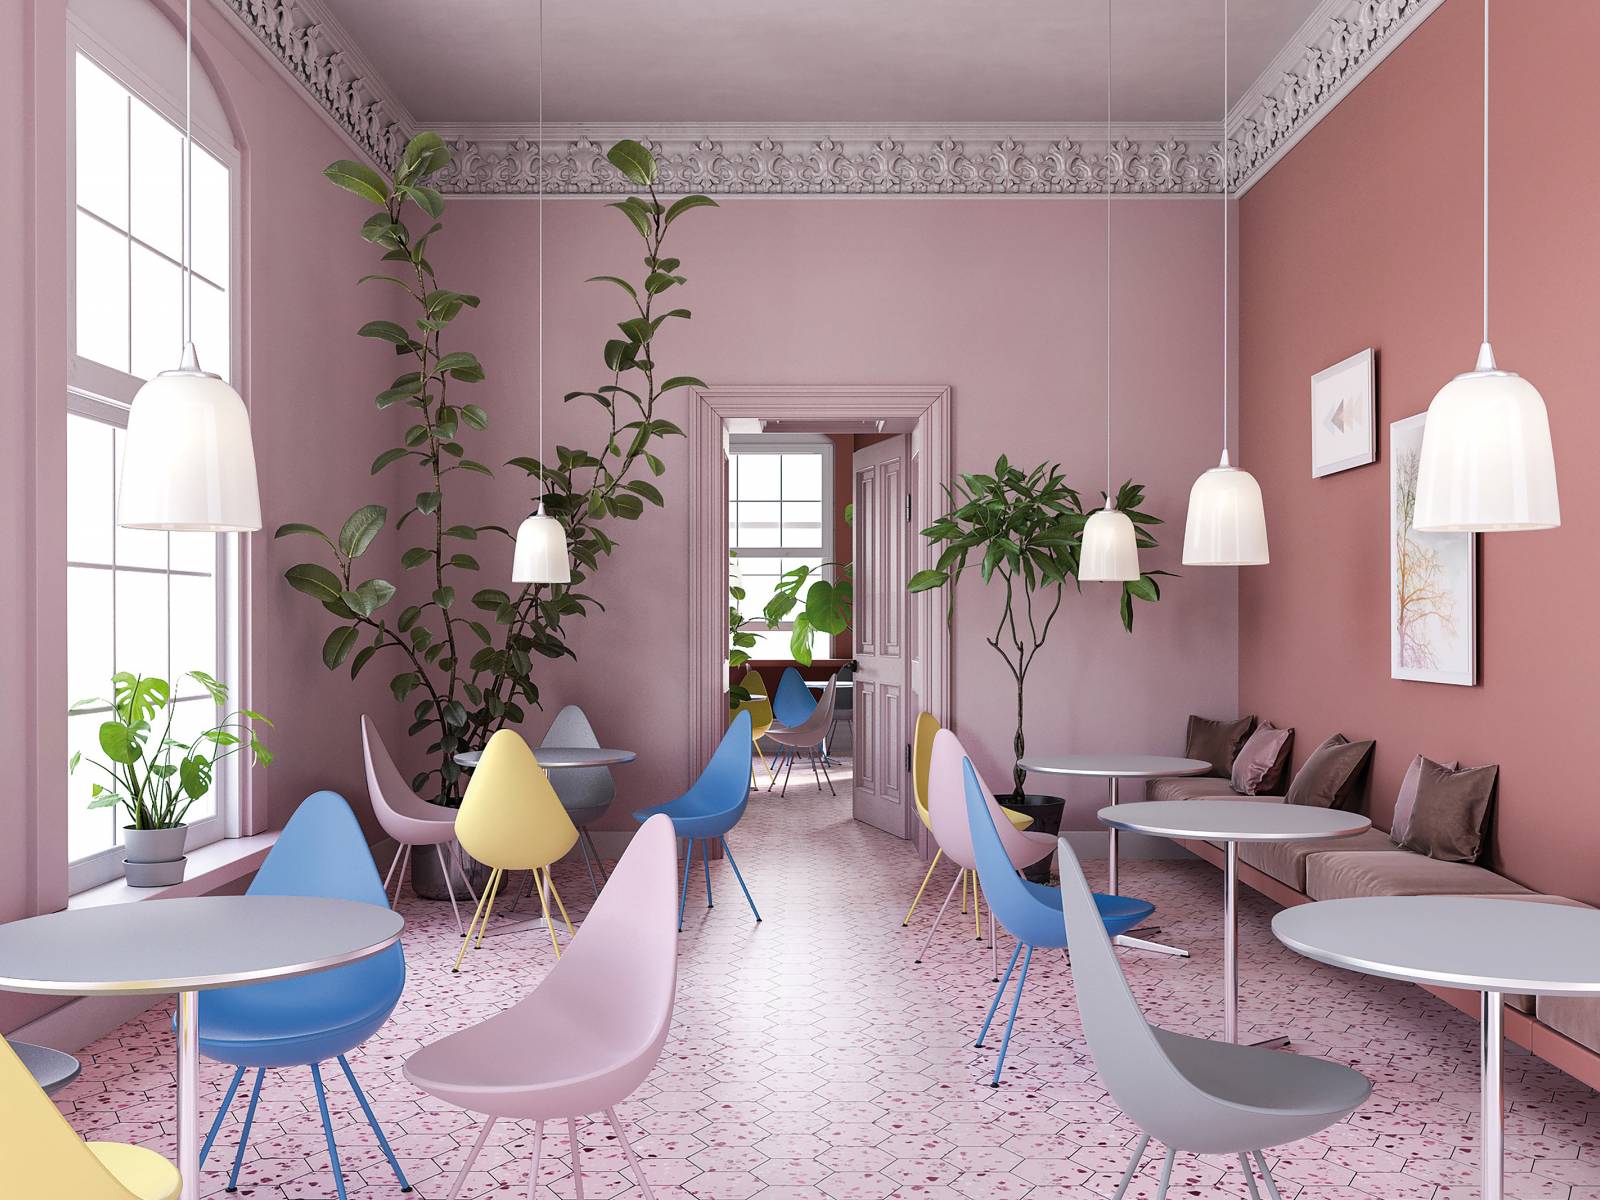 Ursprünglich von Arne Jacobsen für das SAS Royal Hotel in Kopenhagen entworfen, präsentiert sich der Klassiker «Drop» 61 Jahre später in vier neuen, frischen Farben. Zu den Stühlen in Pink, Gelb, Blau oder Grau gibt es zusätzlich bequeme Sitzkissen in zwei Graustufen, die den Sitz vollständig ausfüllen. Fritz Hansen.